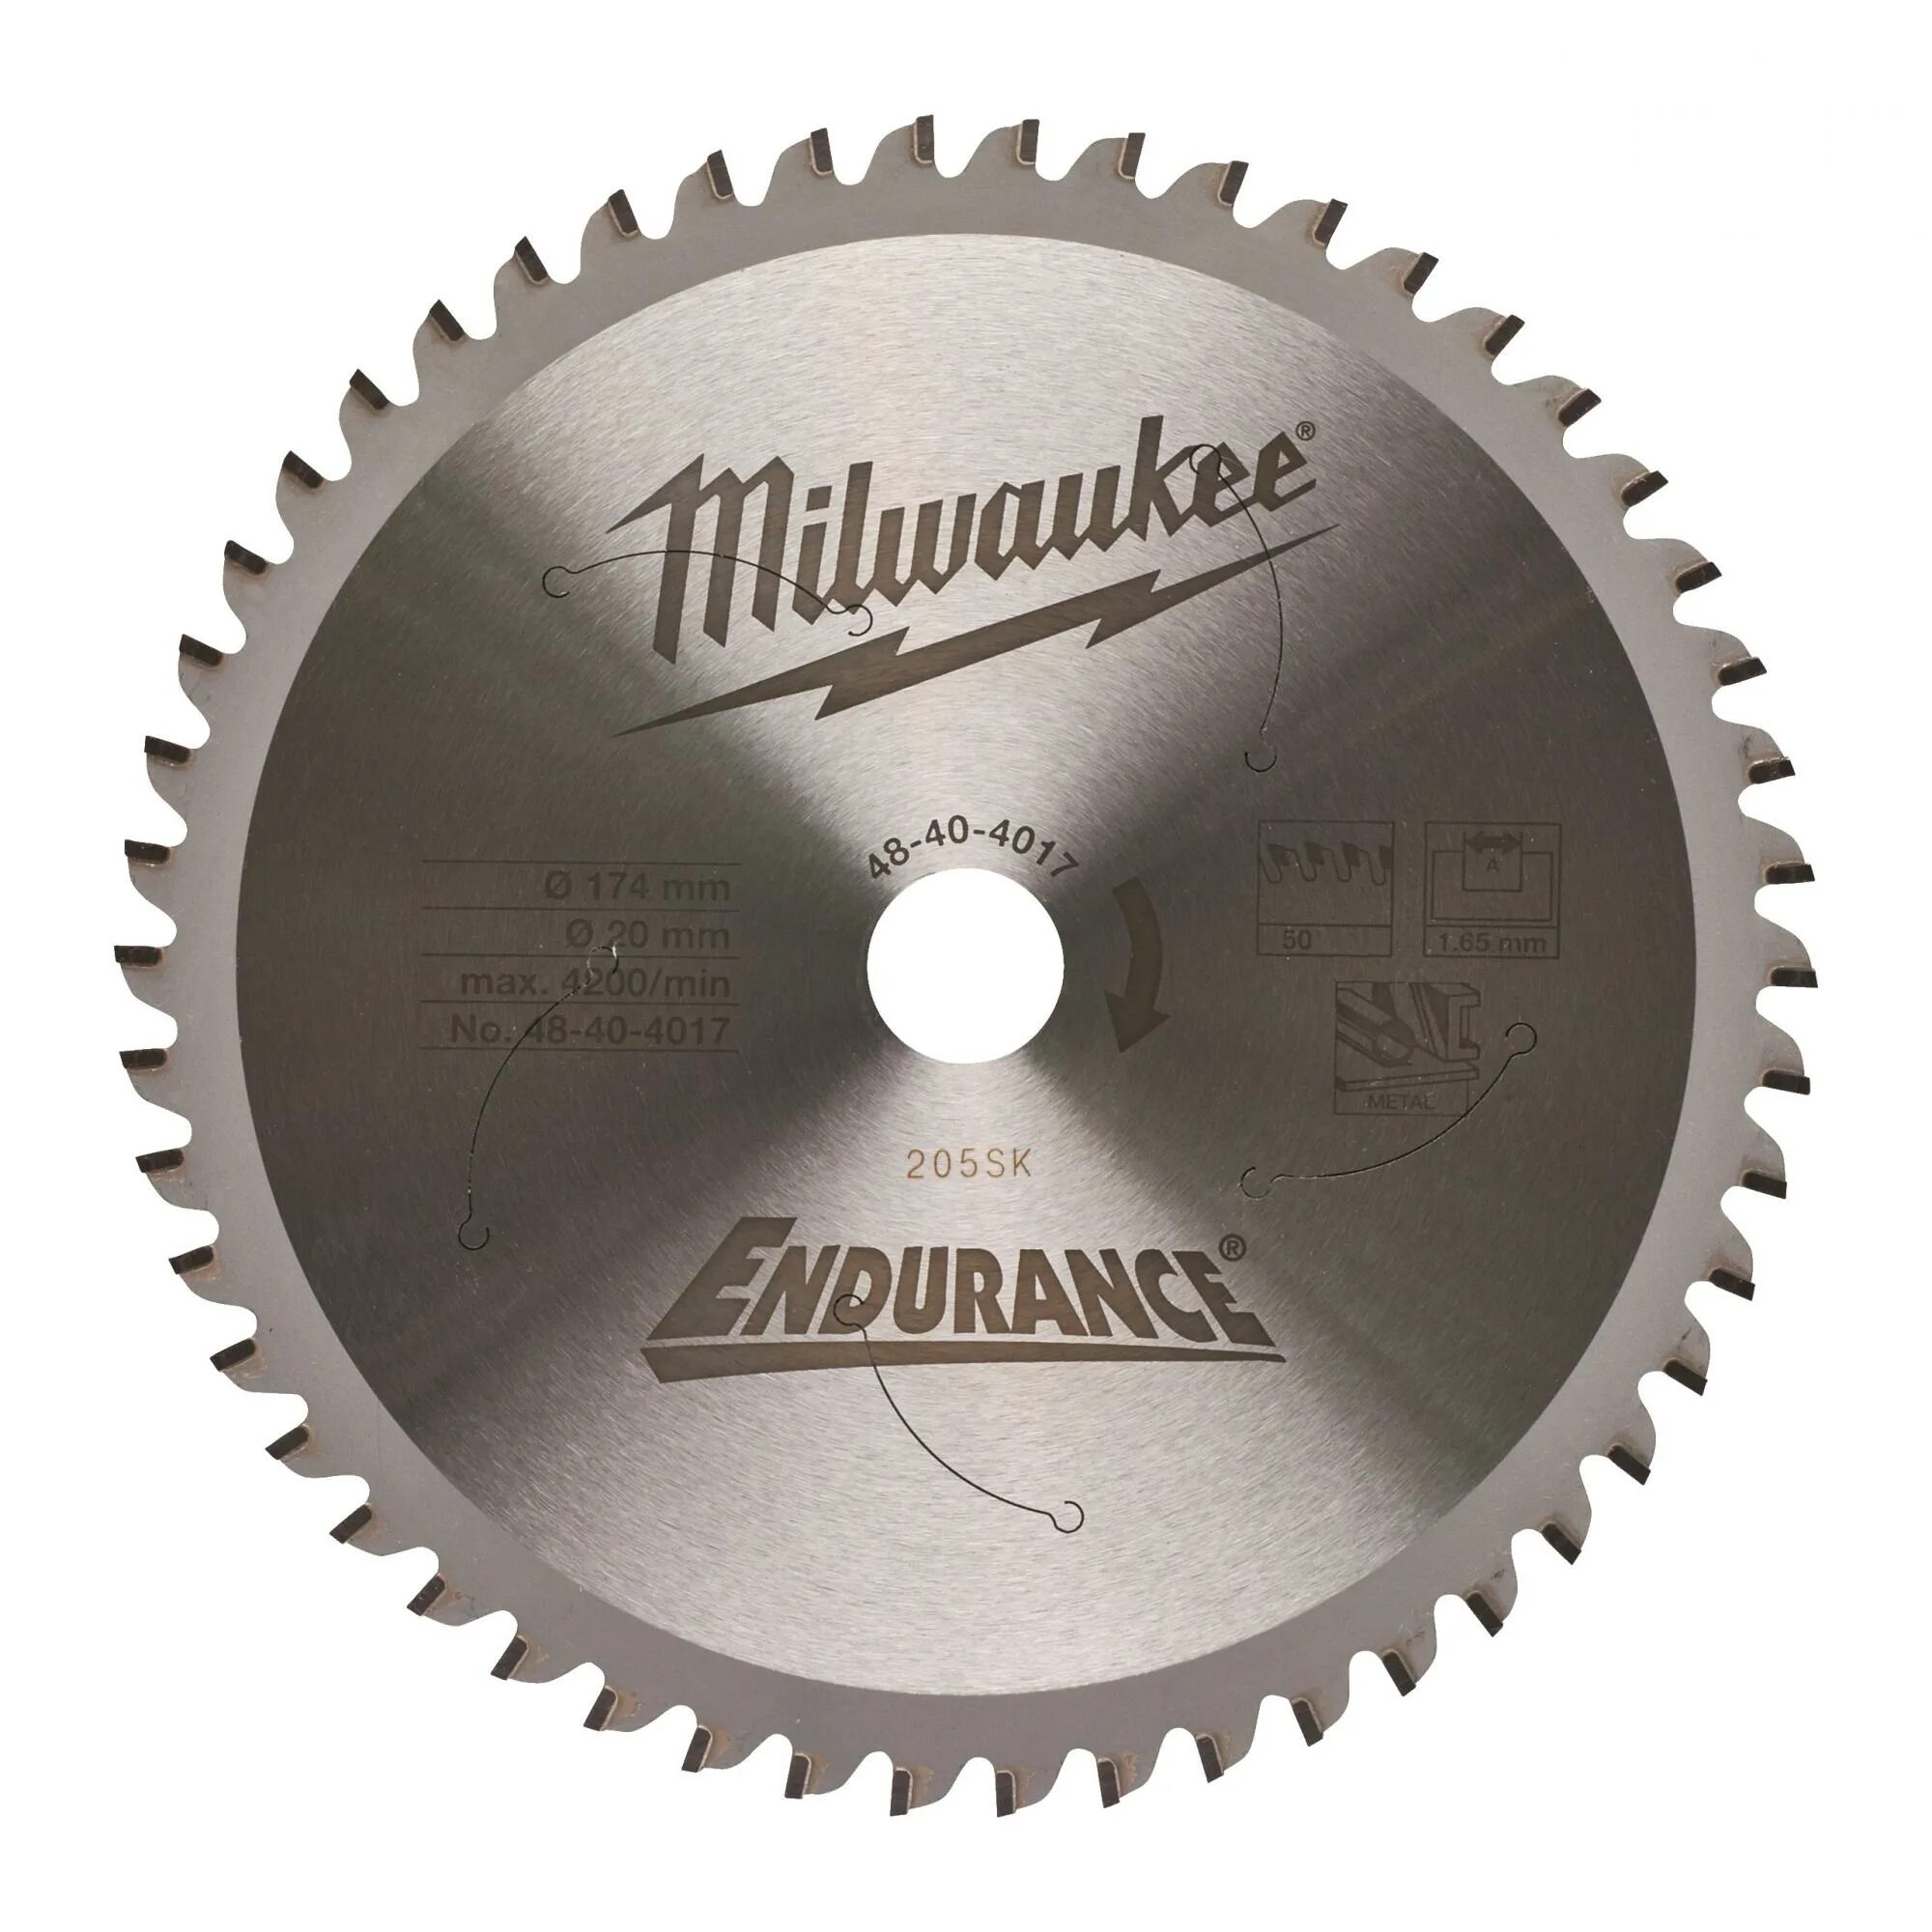 Пильный диск Milwaukee. Пильный диск по металлу 150 x 20. Milwaukee диск 185ммx20мм. Диск для пилы Milwaukee. Диск для монтажной пилы